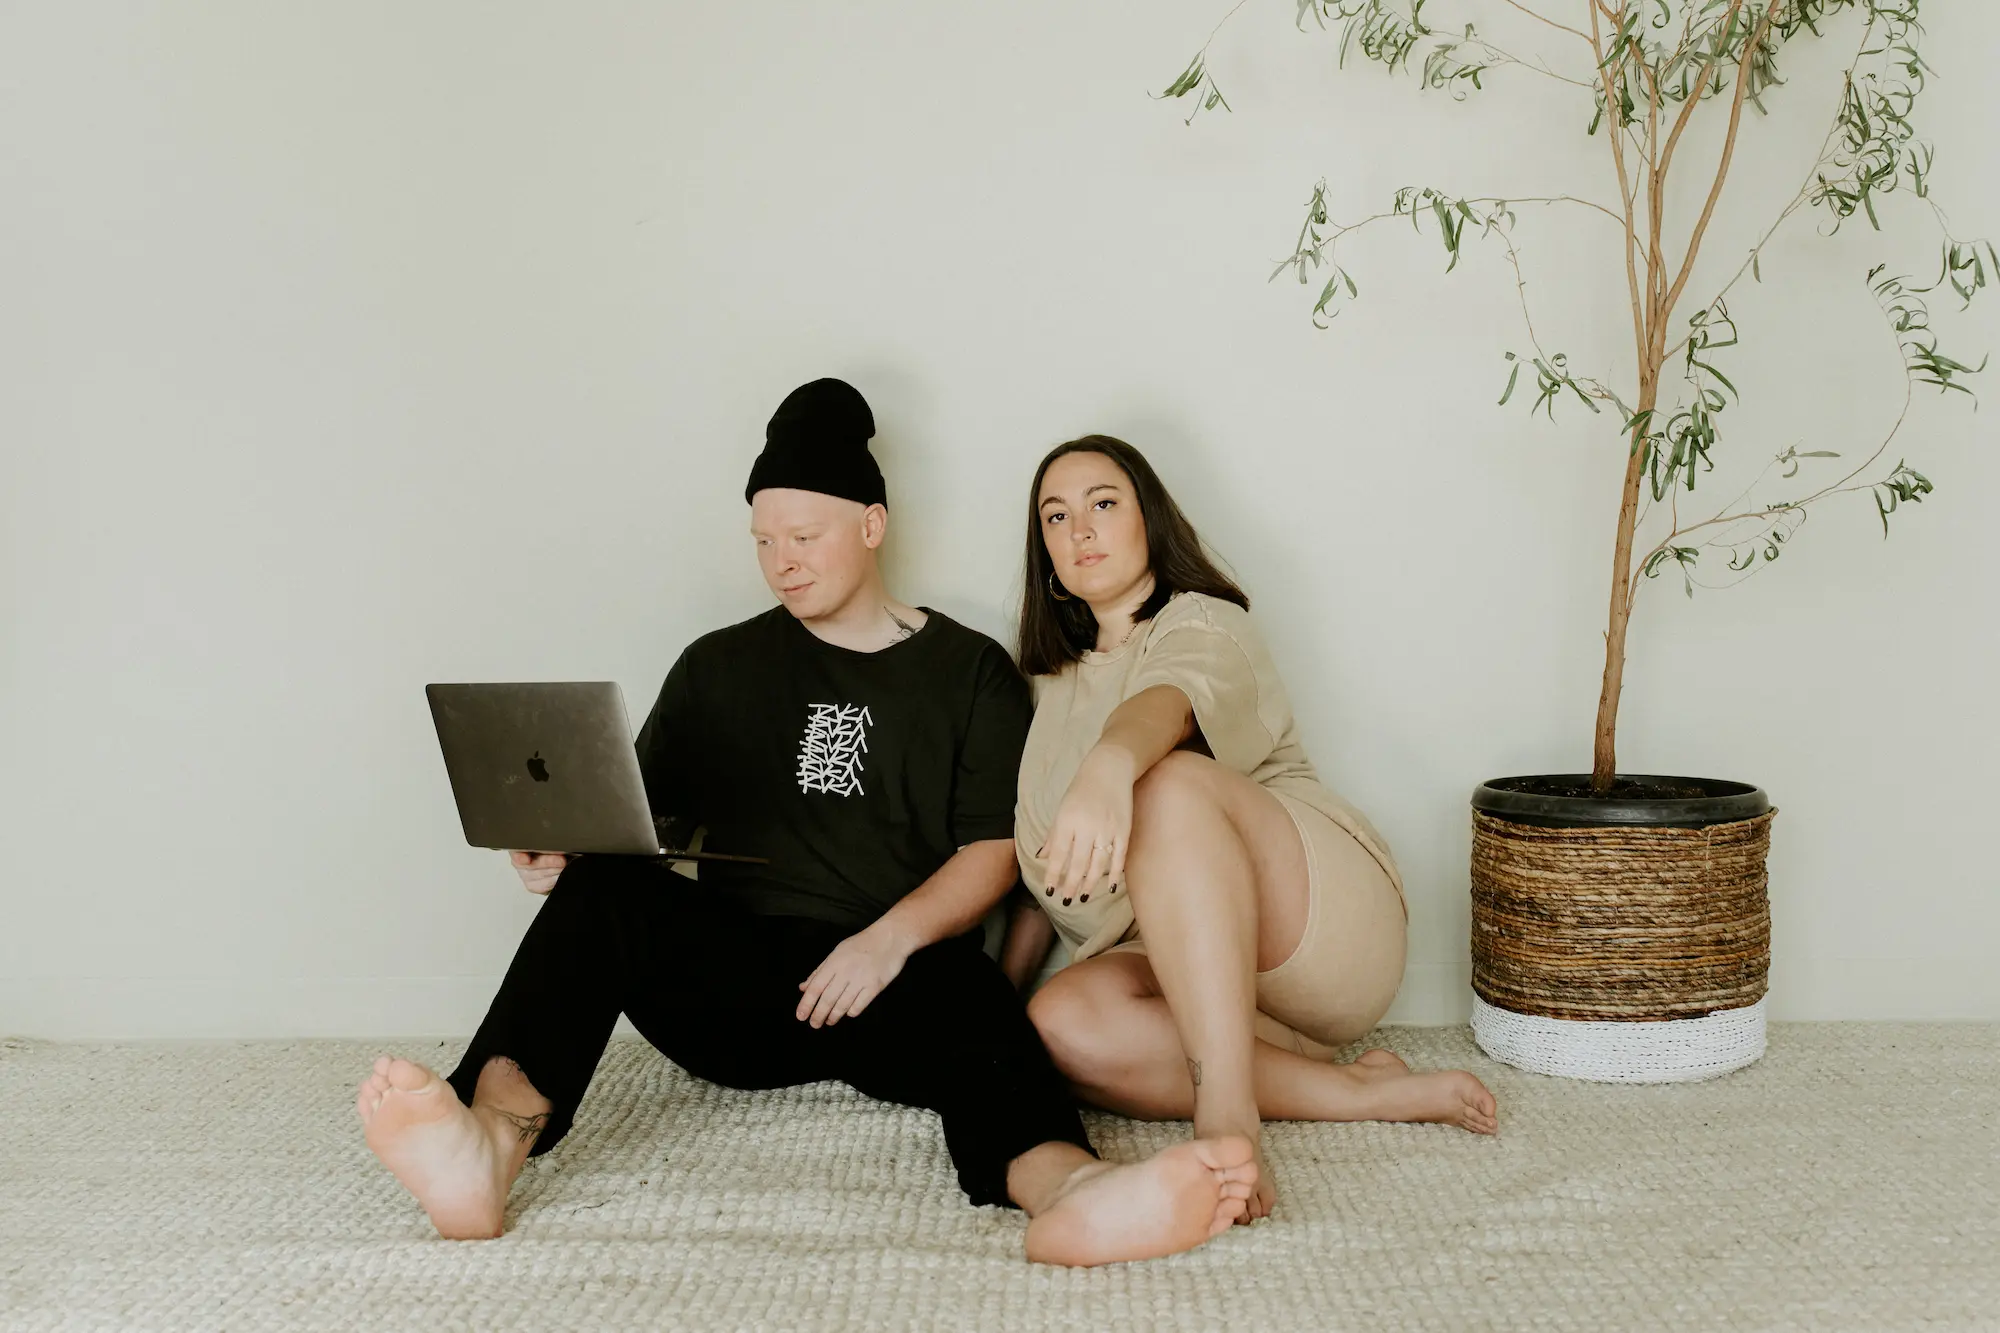 coppia cerca terapia online